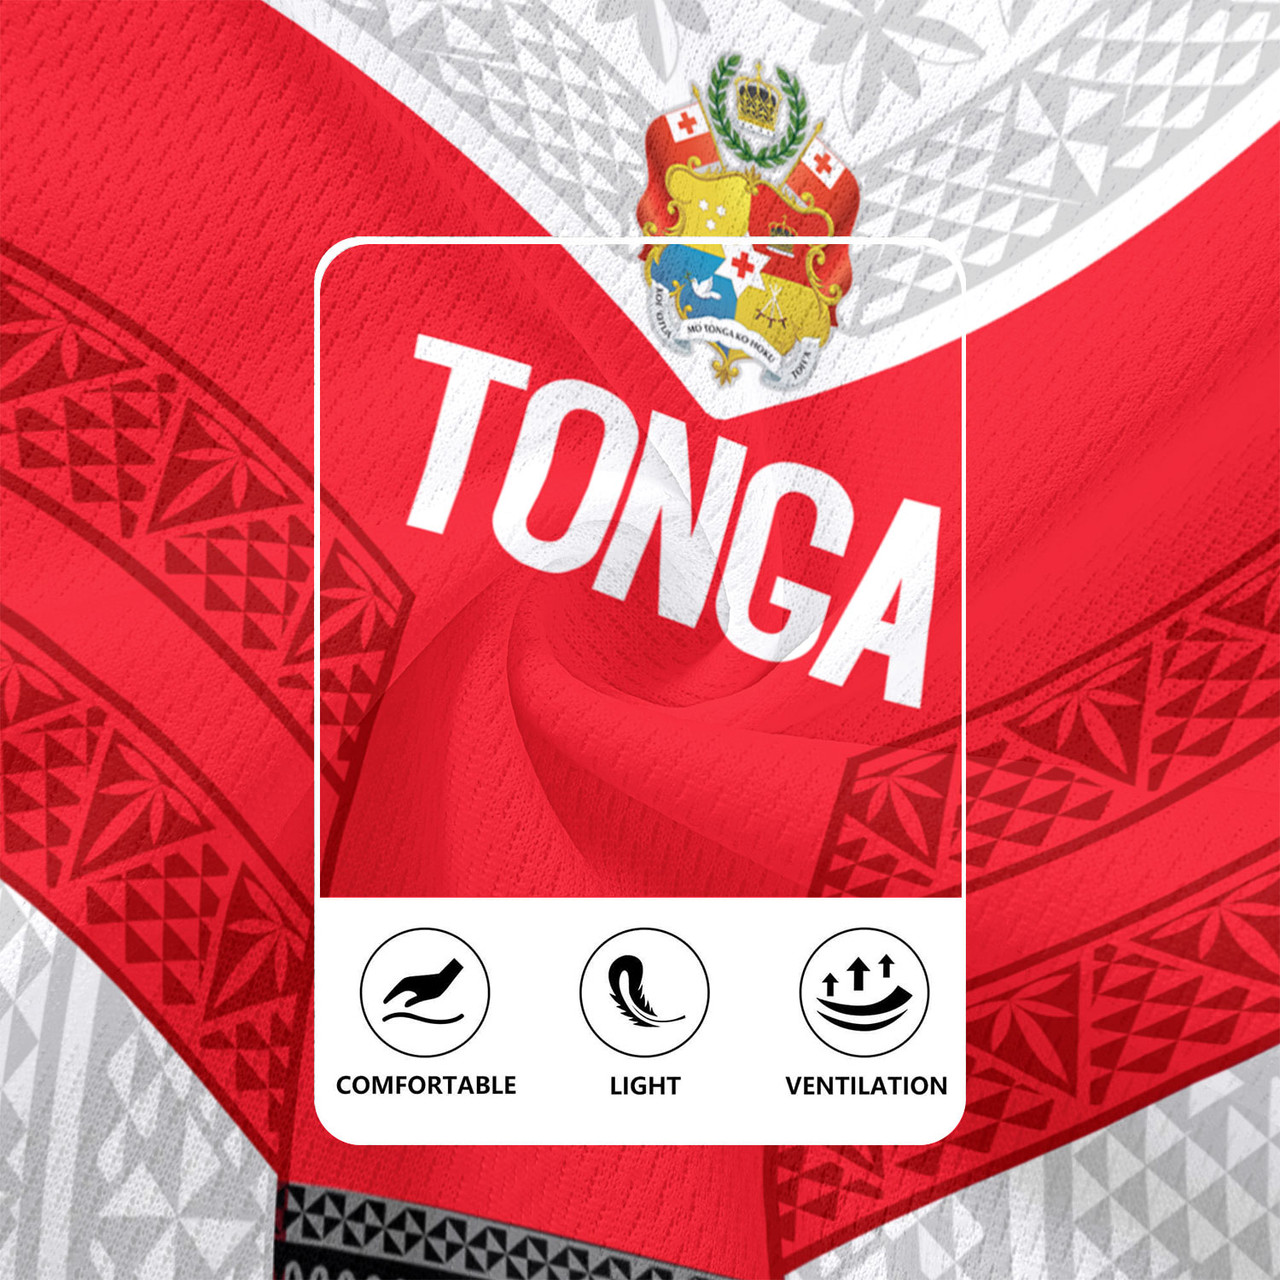 Tonga Custom Personalised Rugby Jersey Mate Ma'a Tonga Ngatu Patterns